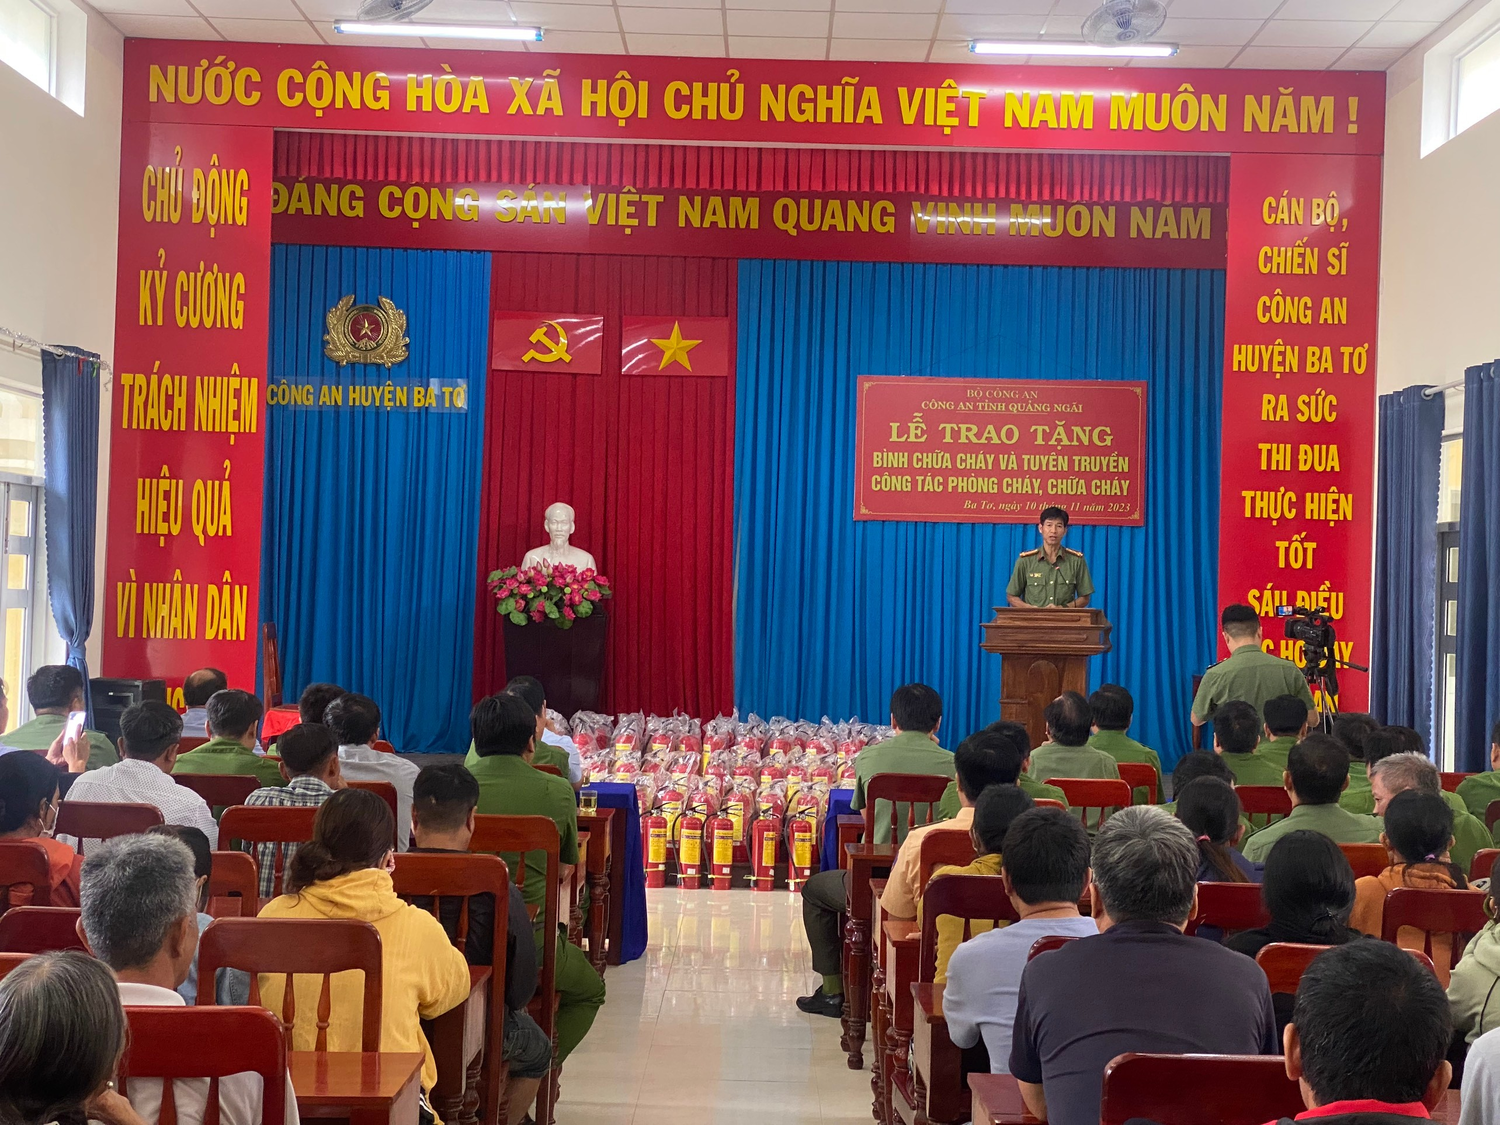 Công an tỉnh Quảng Ngãi trao tặng 200 bình chữa cháy cho hộ nghèo tại huyện Ba Tơ